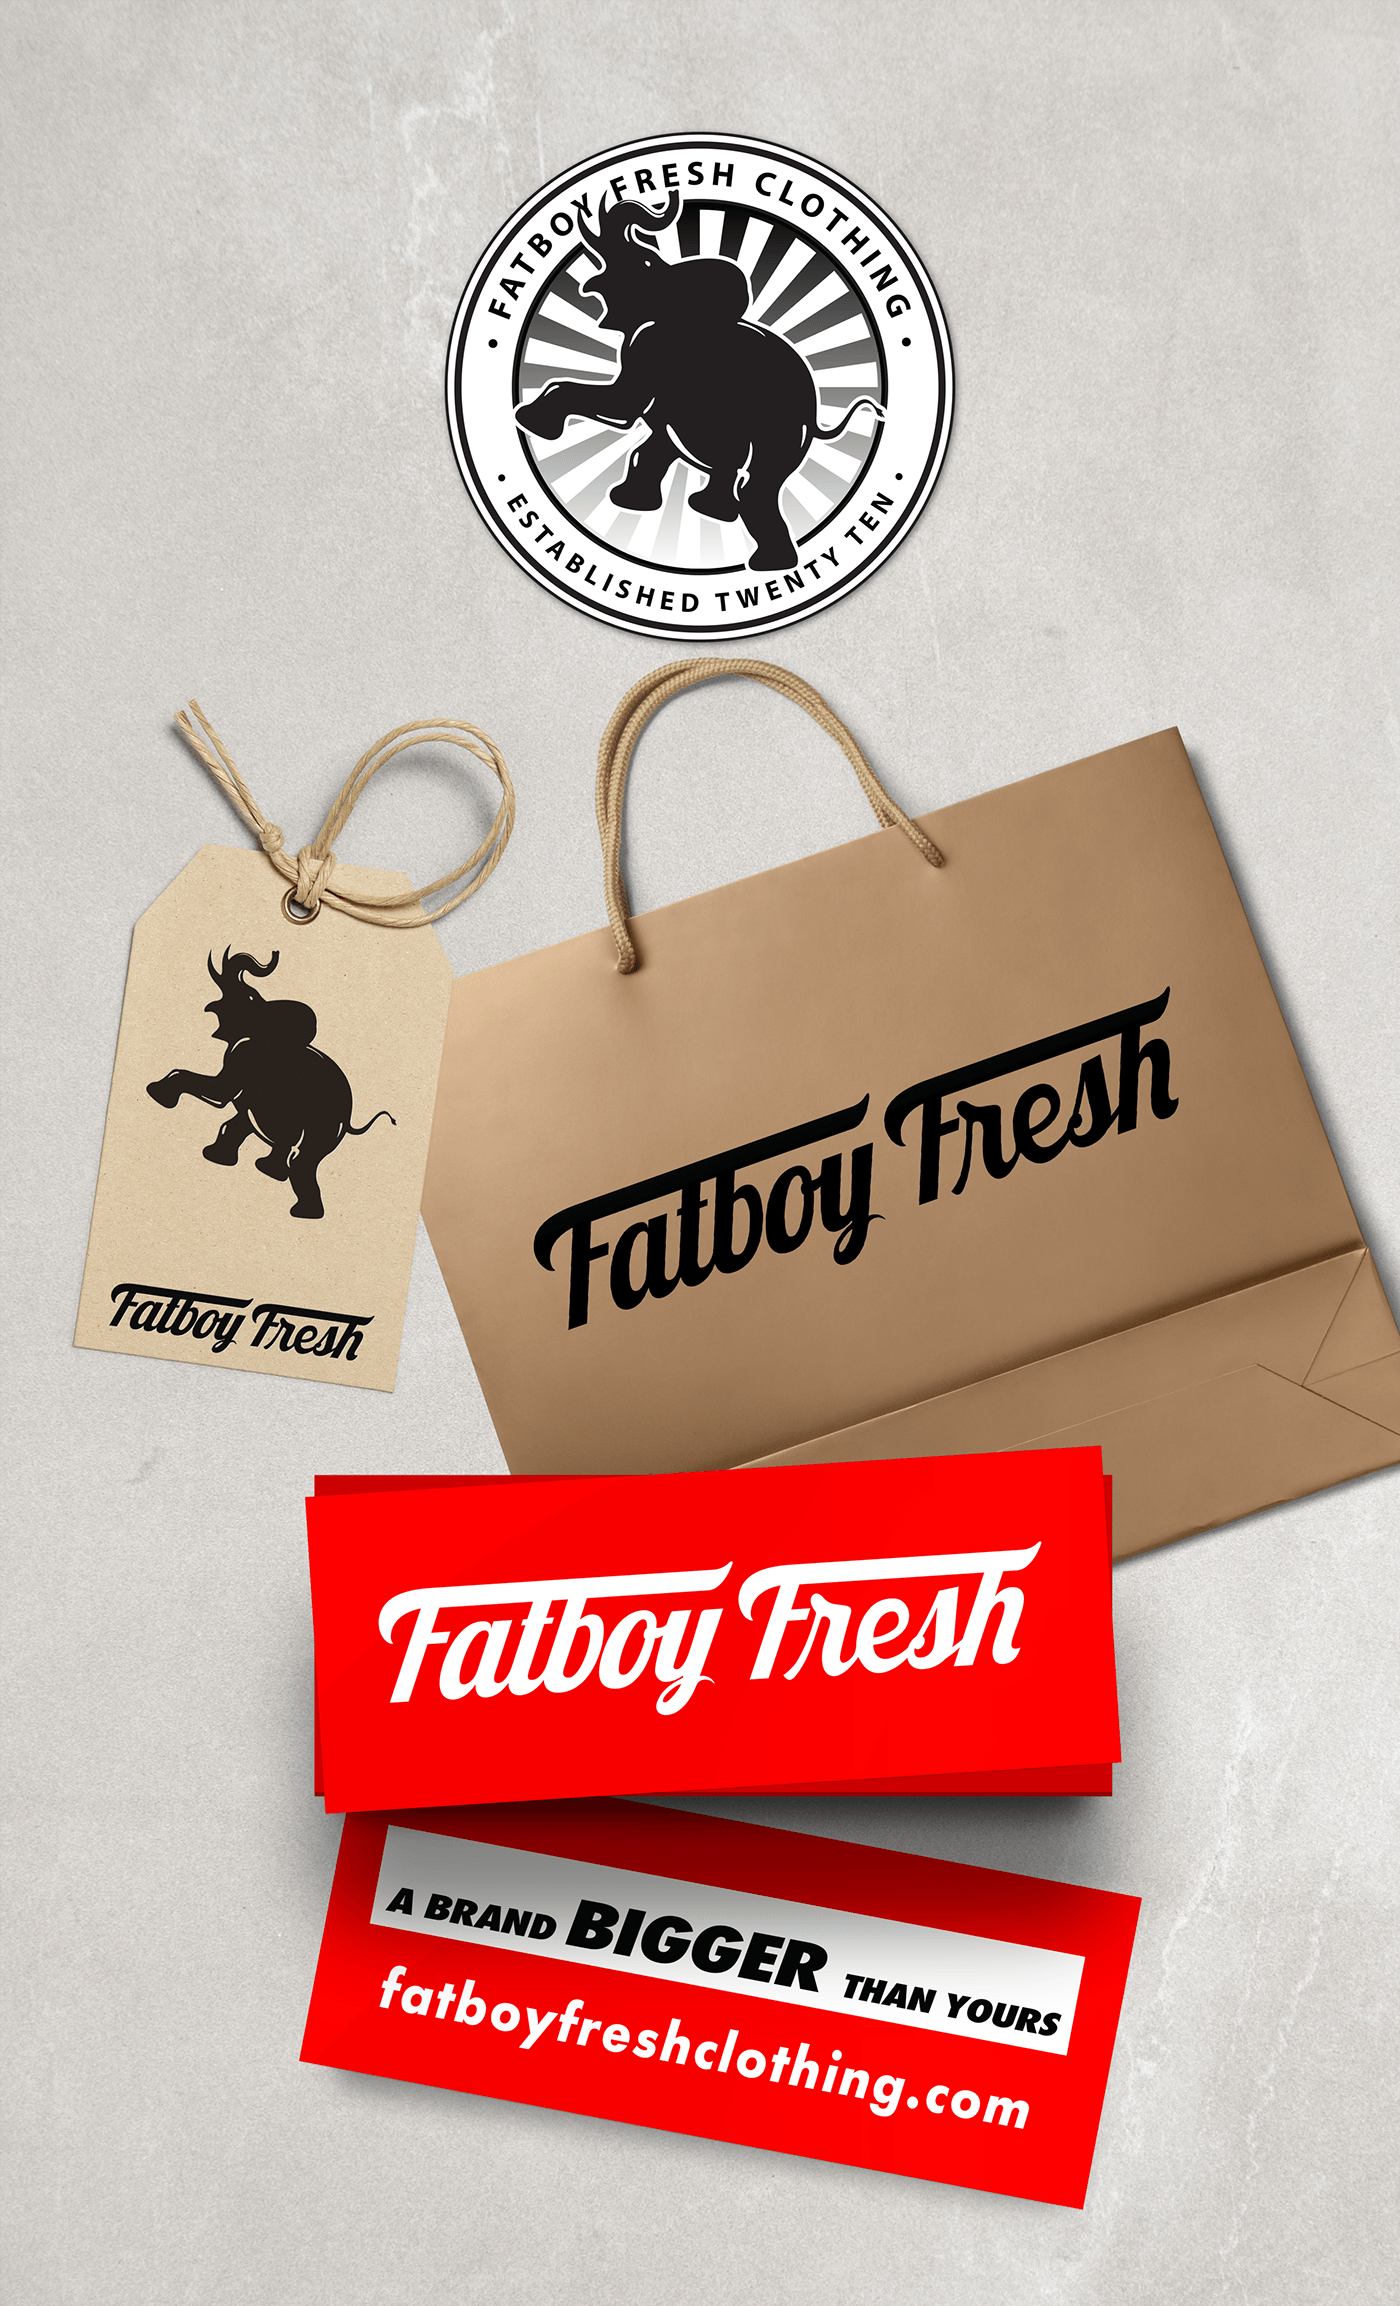 Fatboy Logo - Fatboy Fresh Clothing on Behance